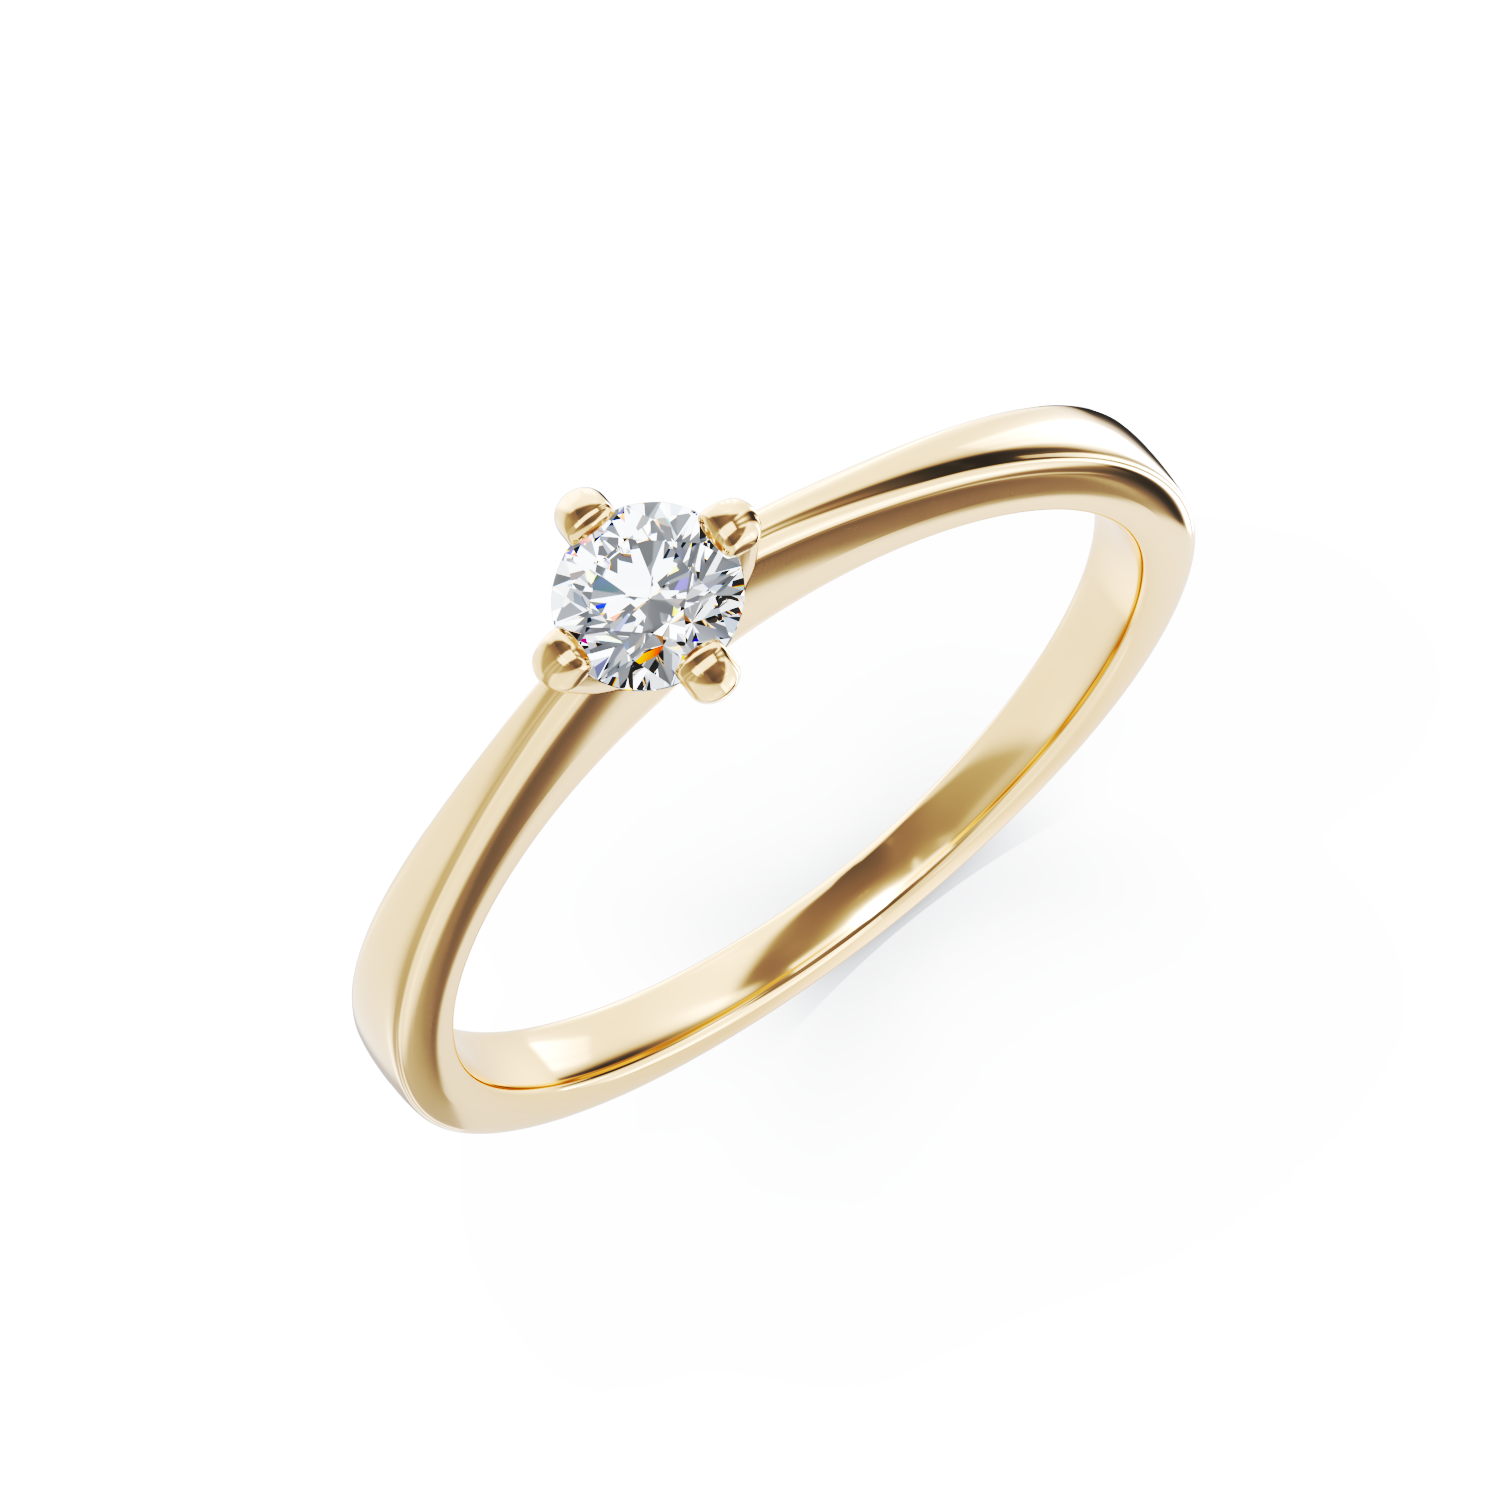 Poze Inel de logodna din aur galben de 18K cu un diamant solitaire de 0.255ct